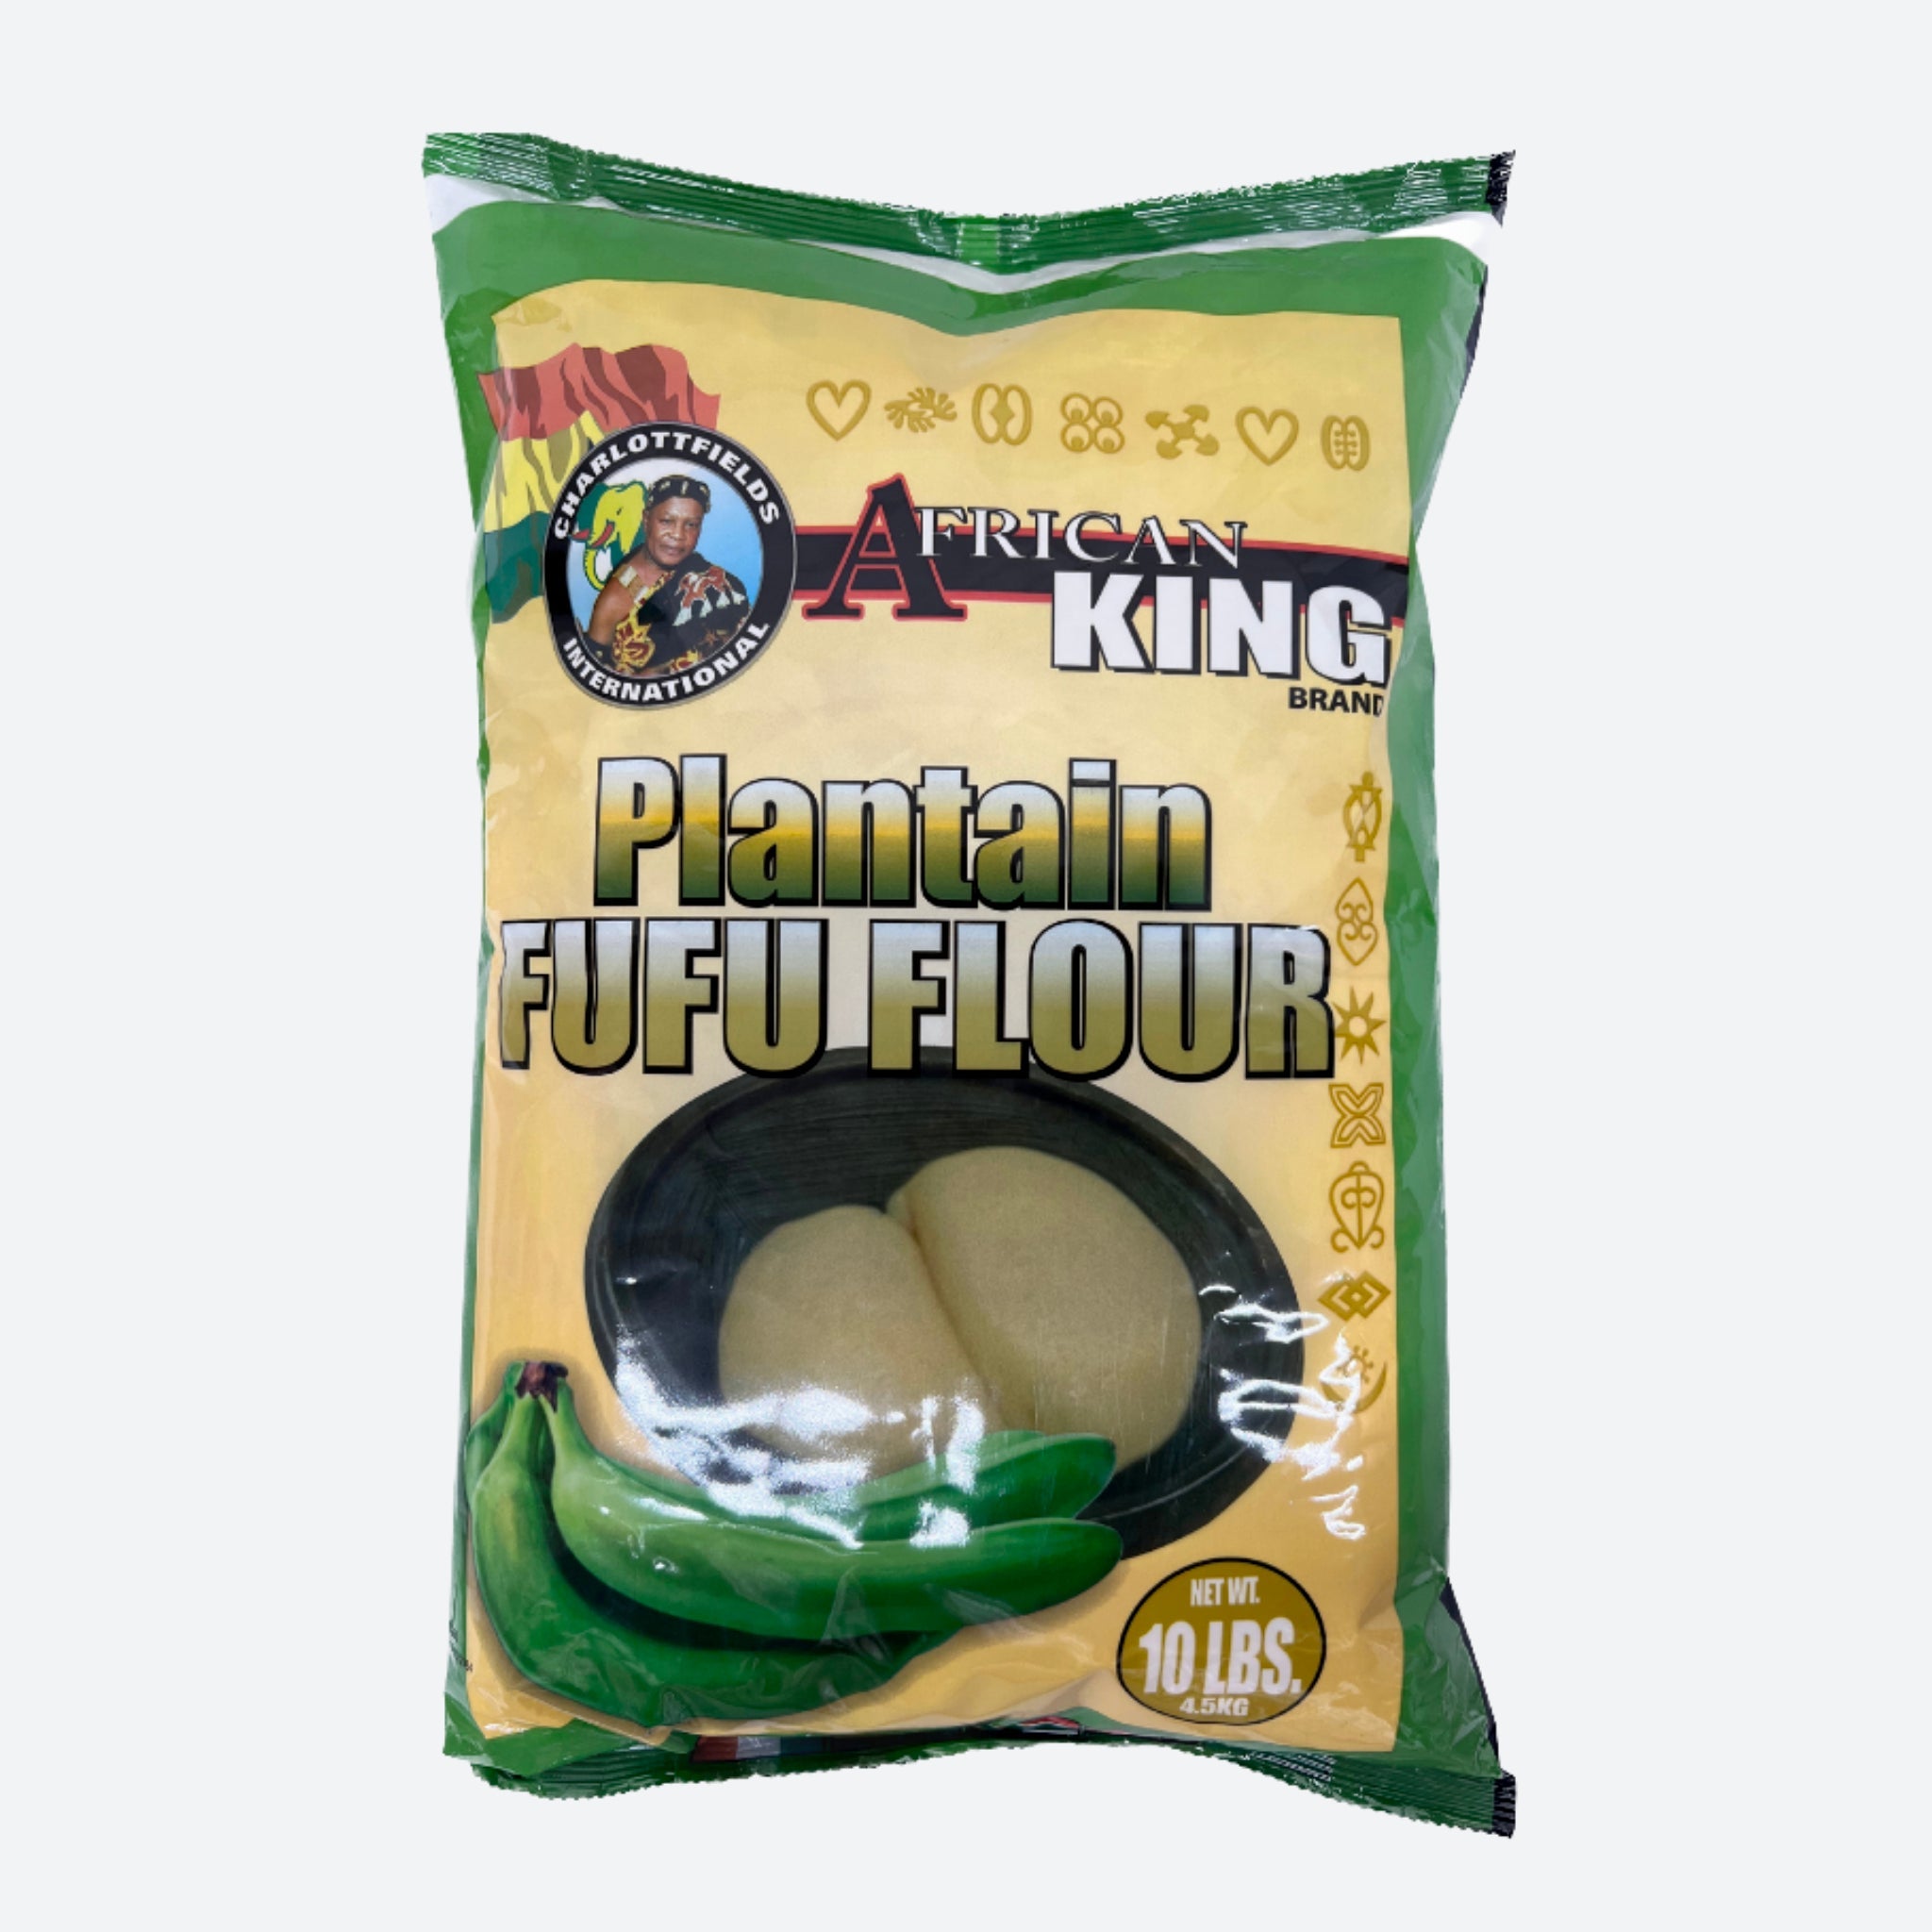 African King Plantain Fufu Flour - 10lbs